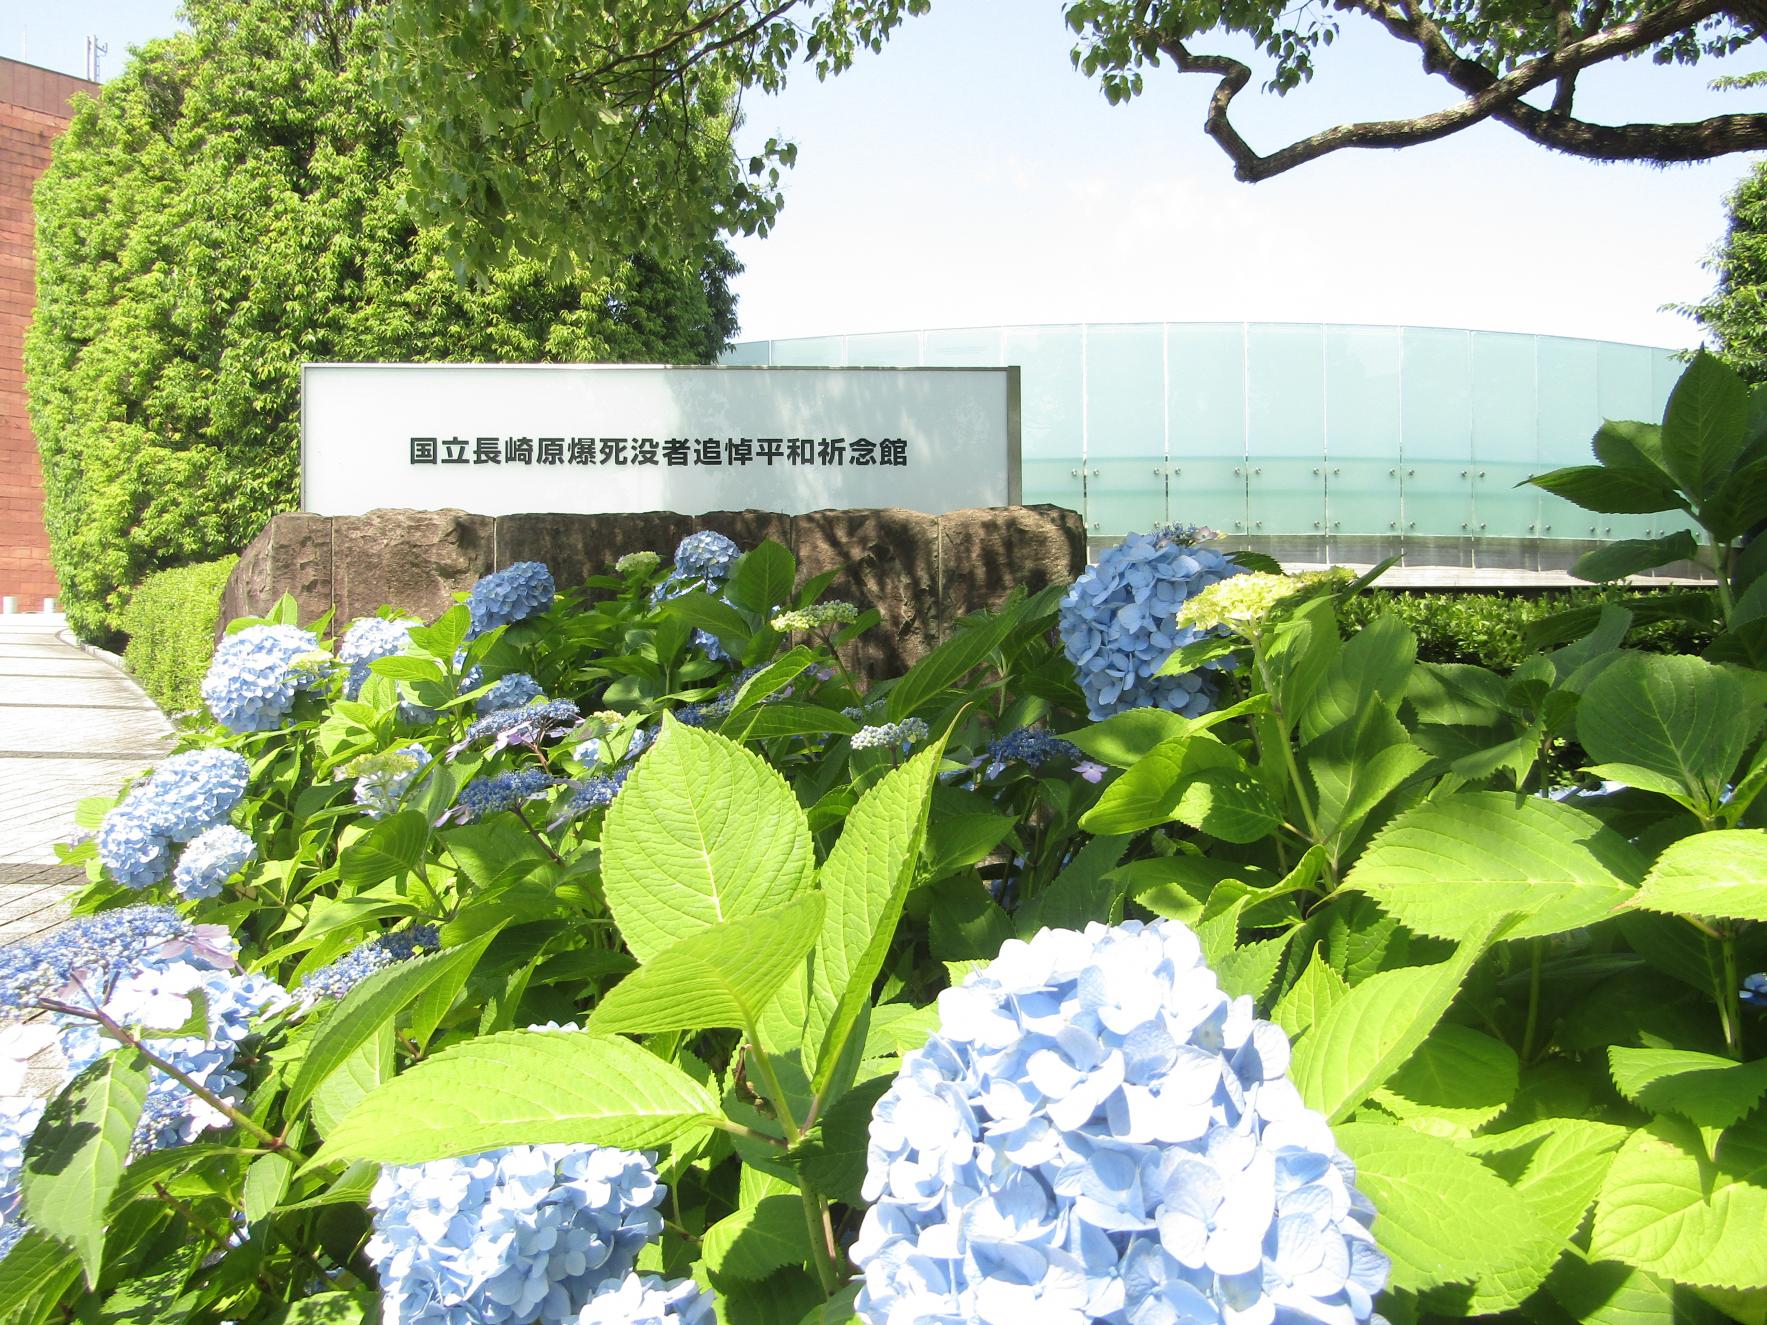 國立長崎原爆死難者追悼和平祈念館-1